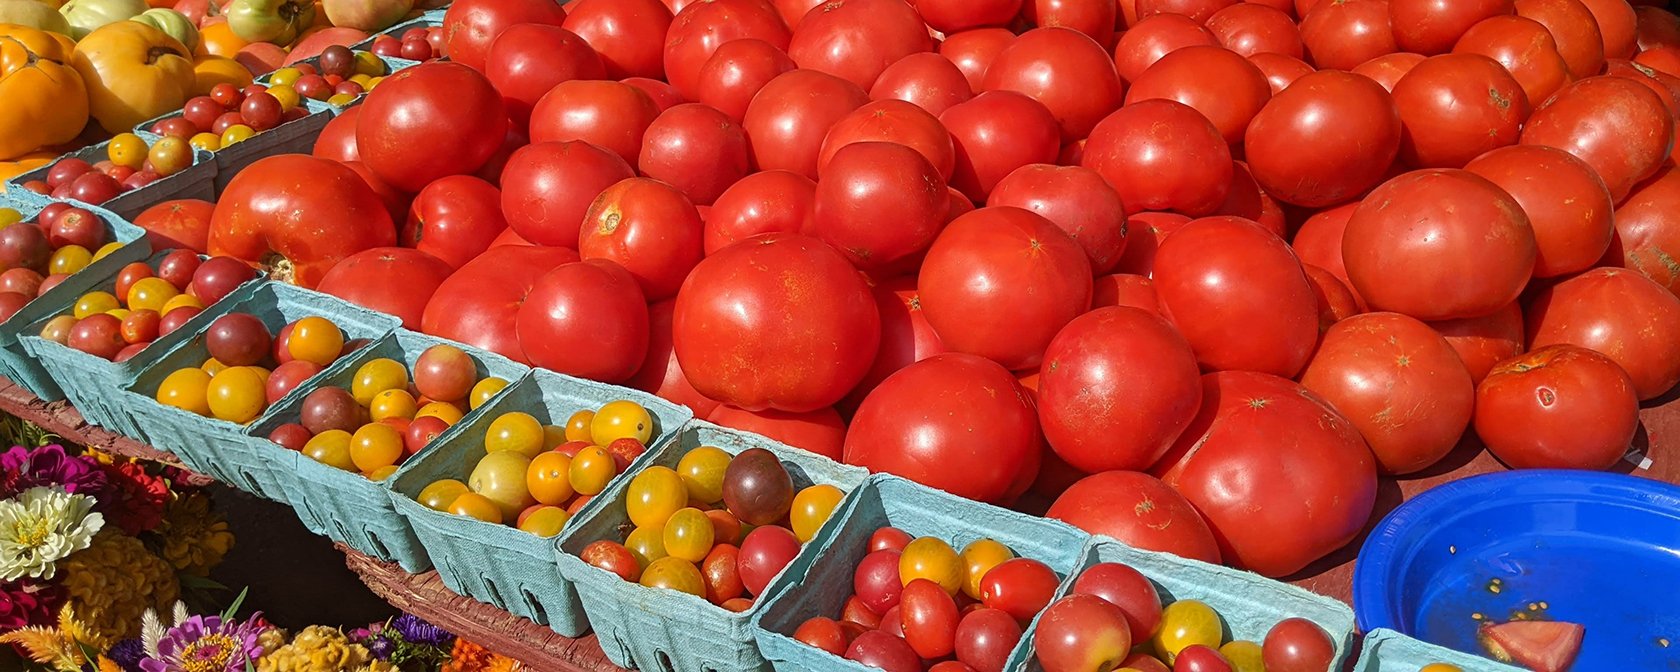 杜邦環島的農貿市場水果和蔬菜展示